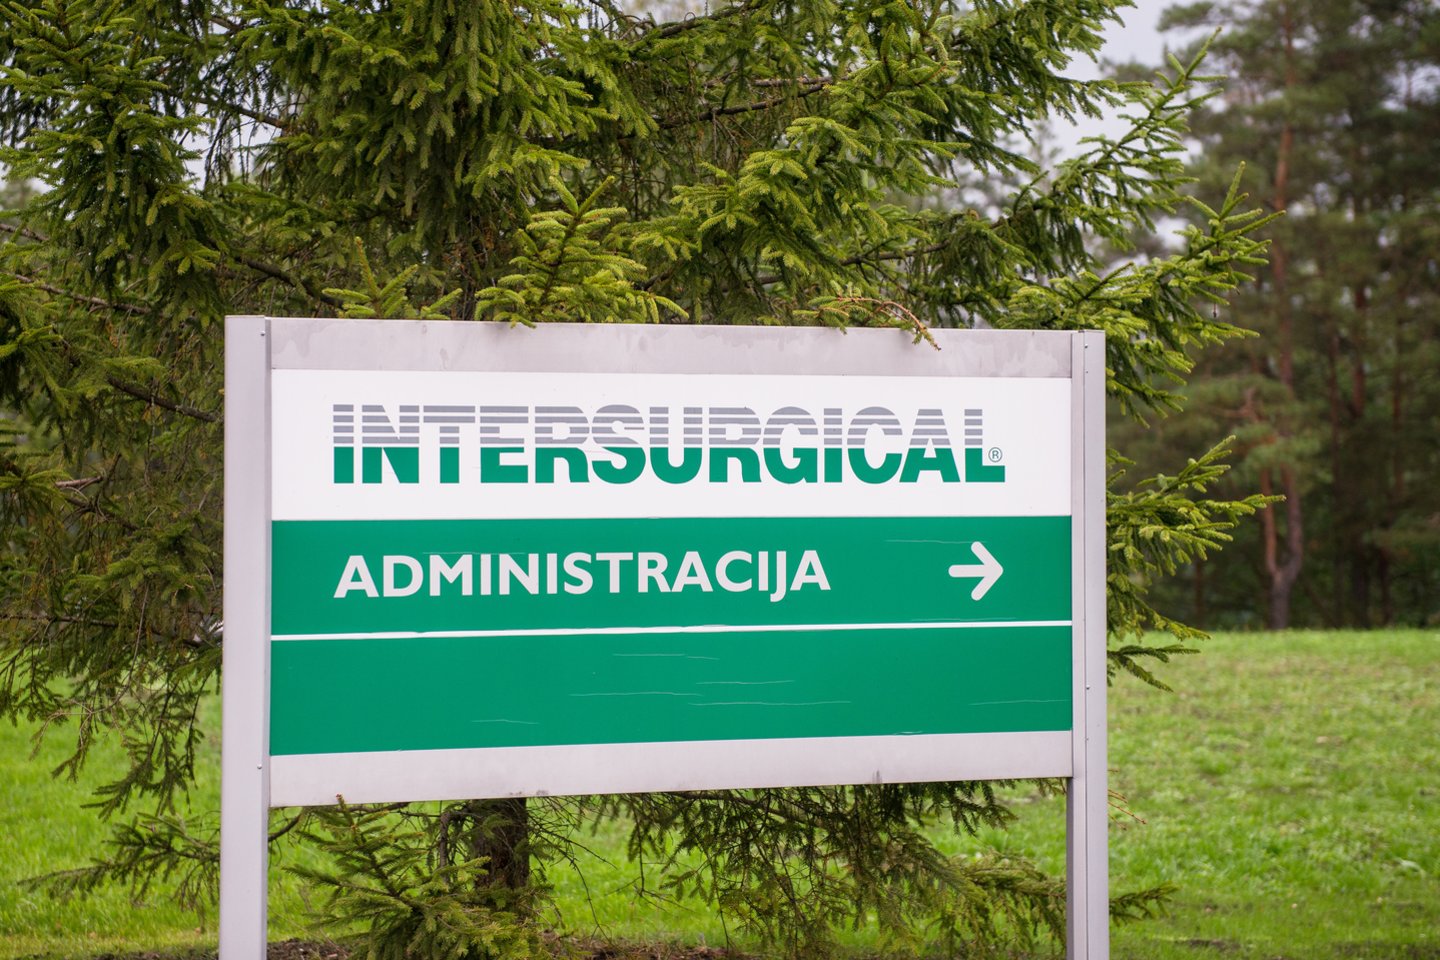  1994 m. bendrovė „Intersurgical“ atidarė savo pirmąjį gamyklą Pabradėje, Lietuvoje, kur šiuo metu yra pagrindinis darbdavys beveik 2500 darbuotojų ir daugiau nei 100 milijonų eurų siekiančia metine apyvarta. <br>J.Stacevičiaus nuotr.